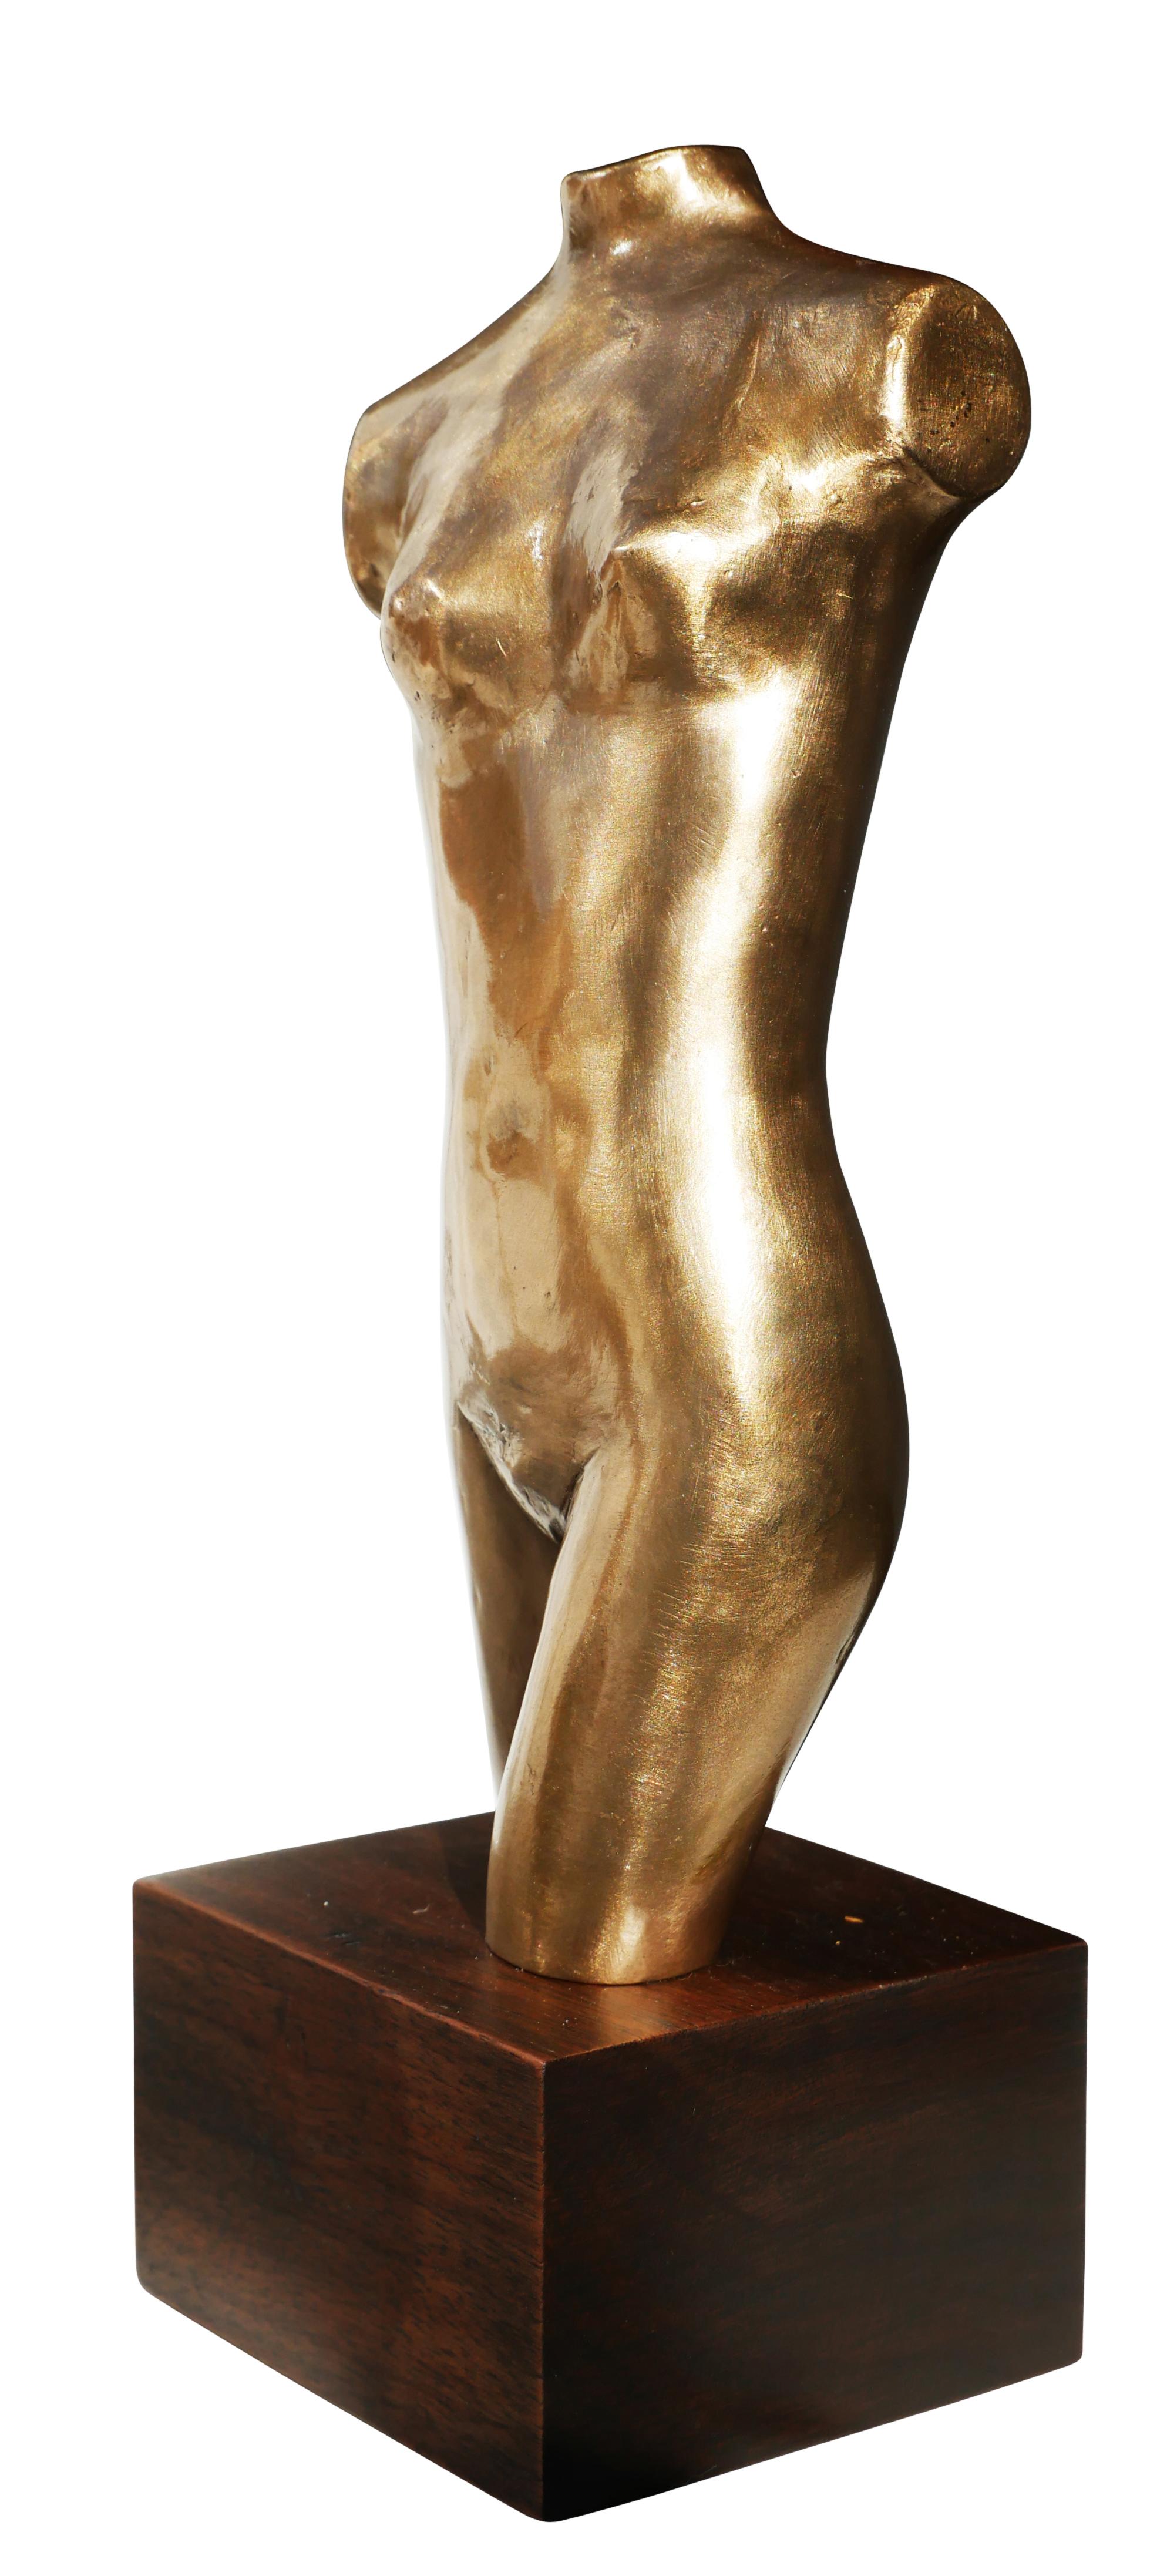 Sculpture en bronze d'un buste de femme nue sans bras de style moderniste abstrait